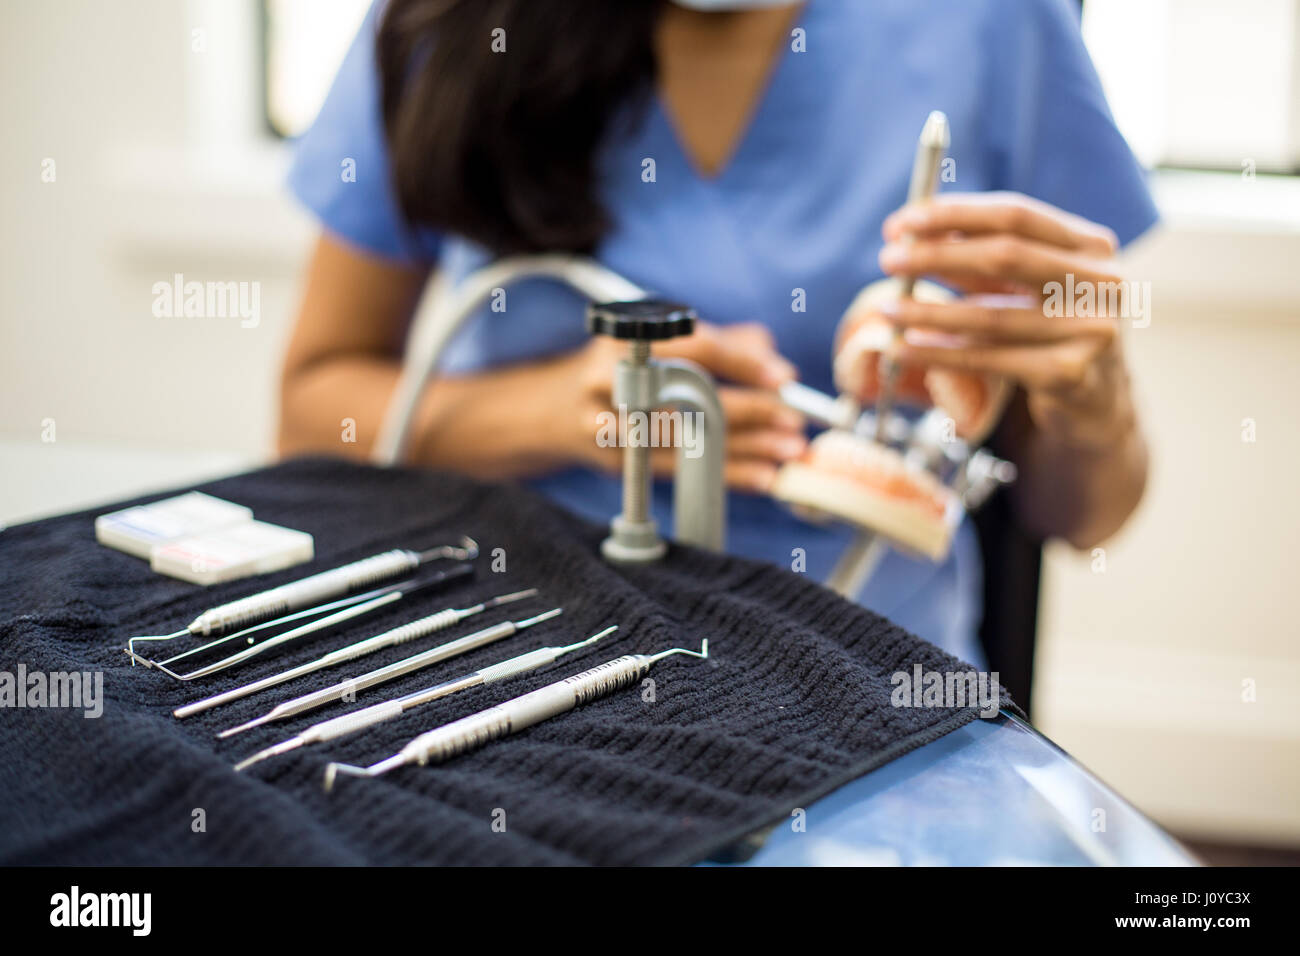 Closeup portrait, jeune étudiant professionnel oral pratique dentaire sur les dents en plastique, cire typodont monté sur table. Cavité de forage prepar Banque D'Images